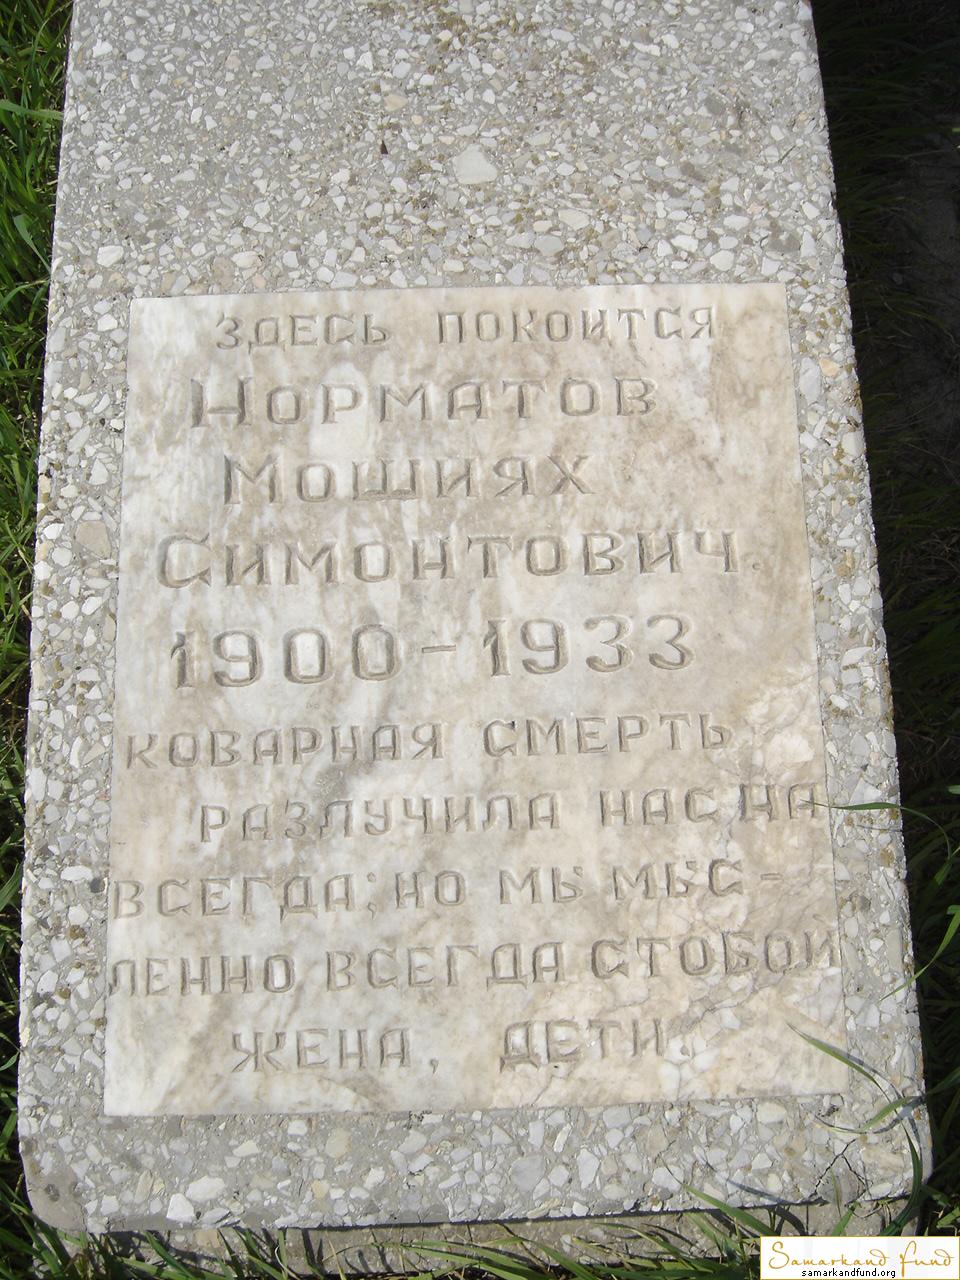 Норматов Мошиях Симонтович  19000 - 1933 зах. №30.JPG